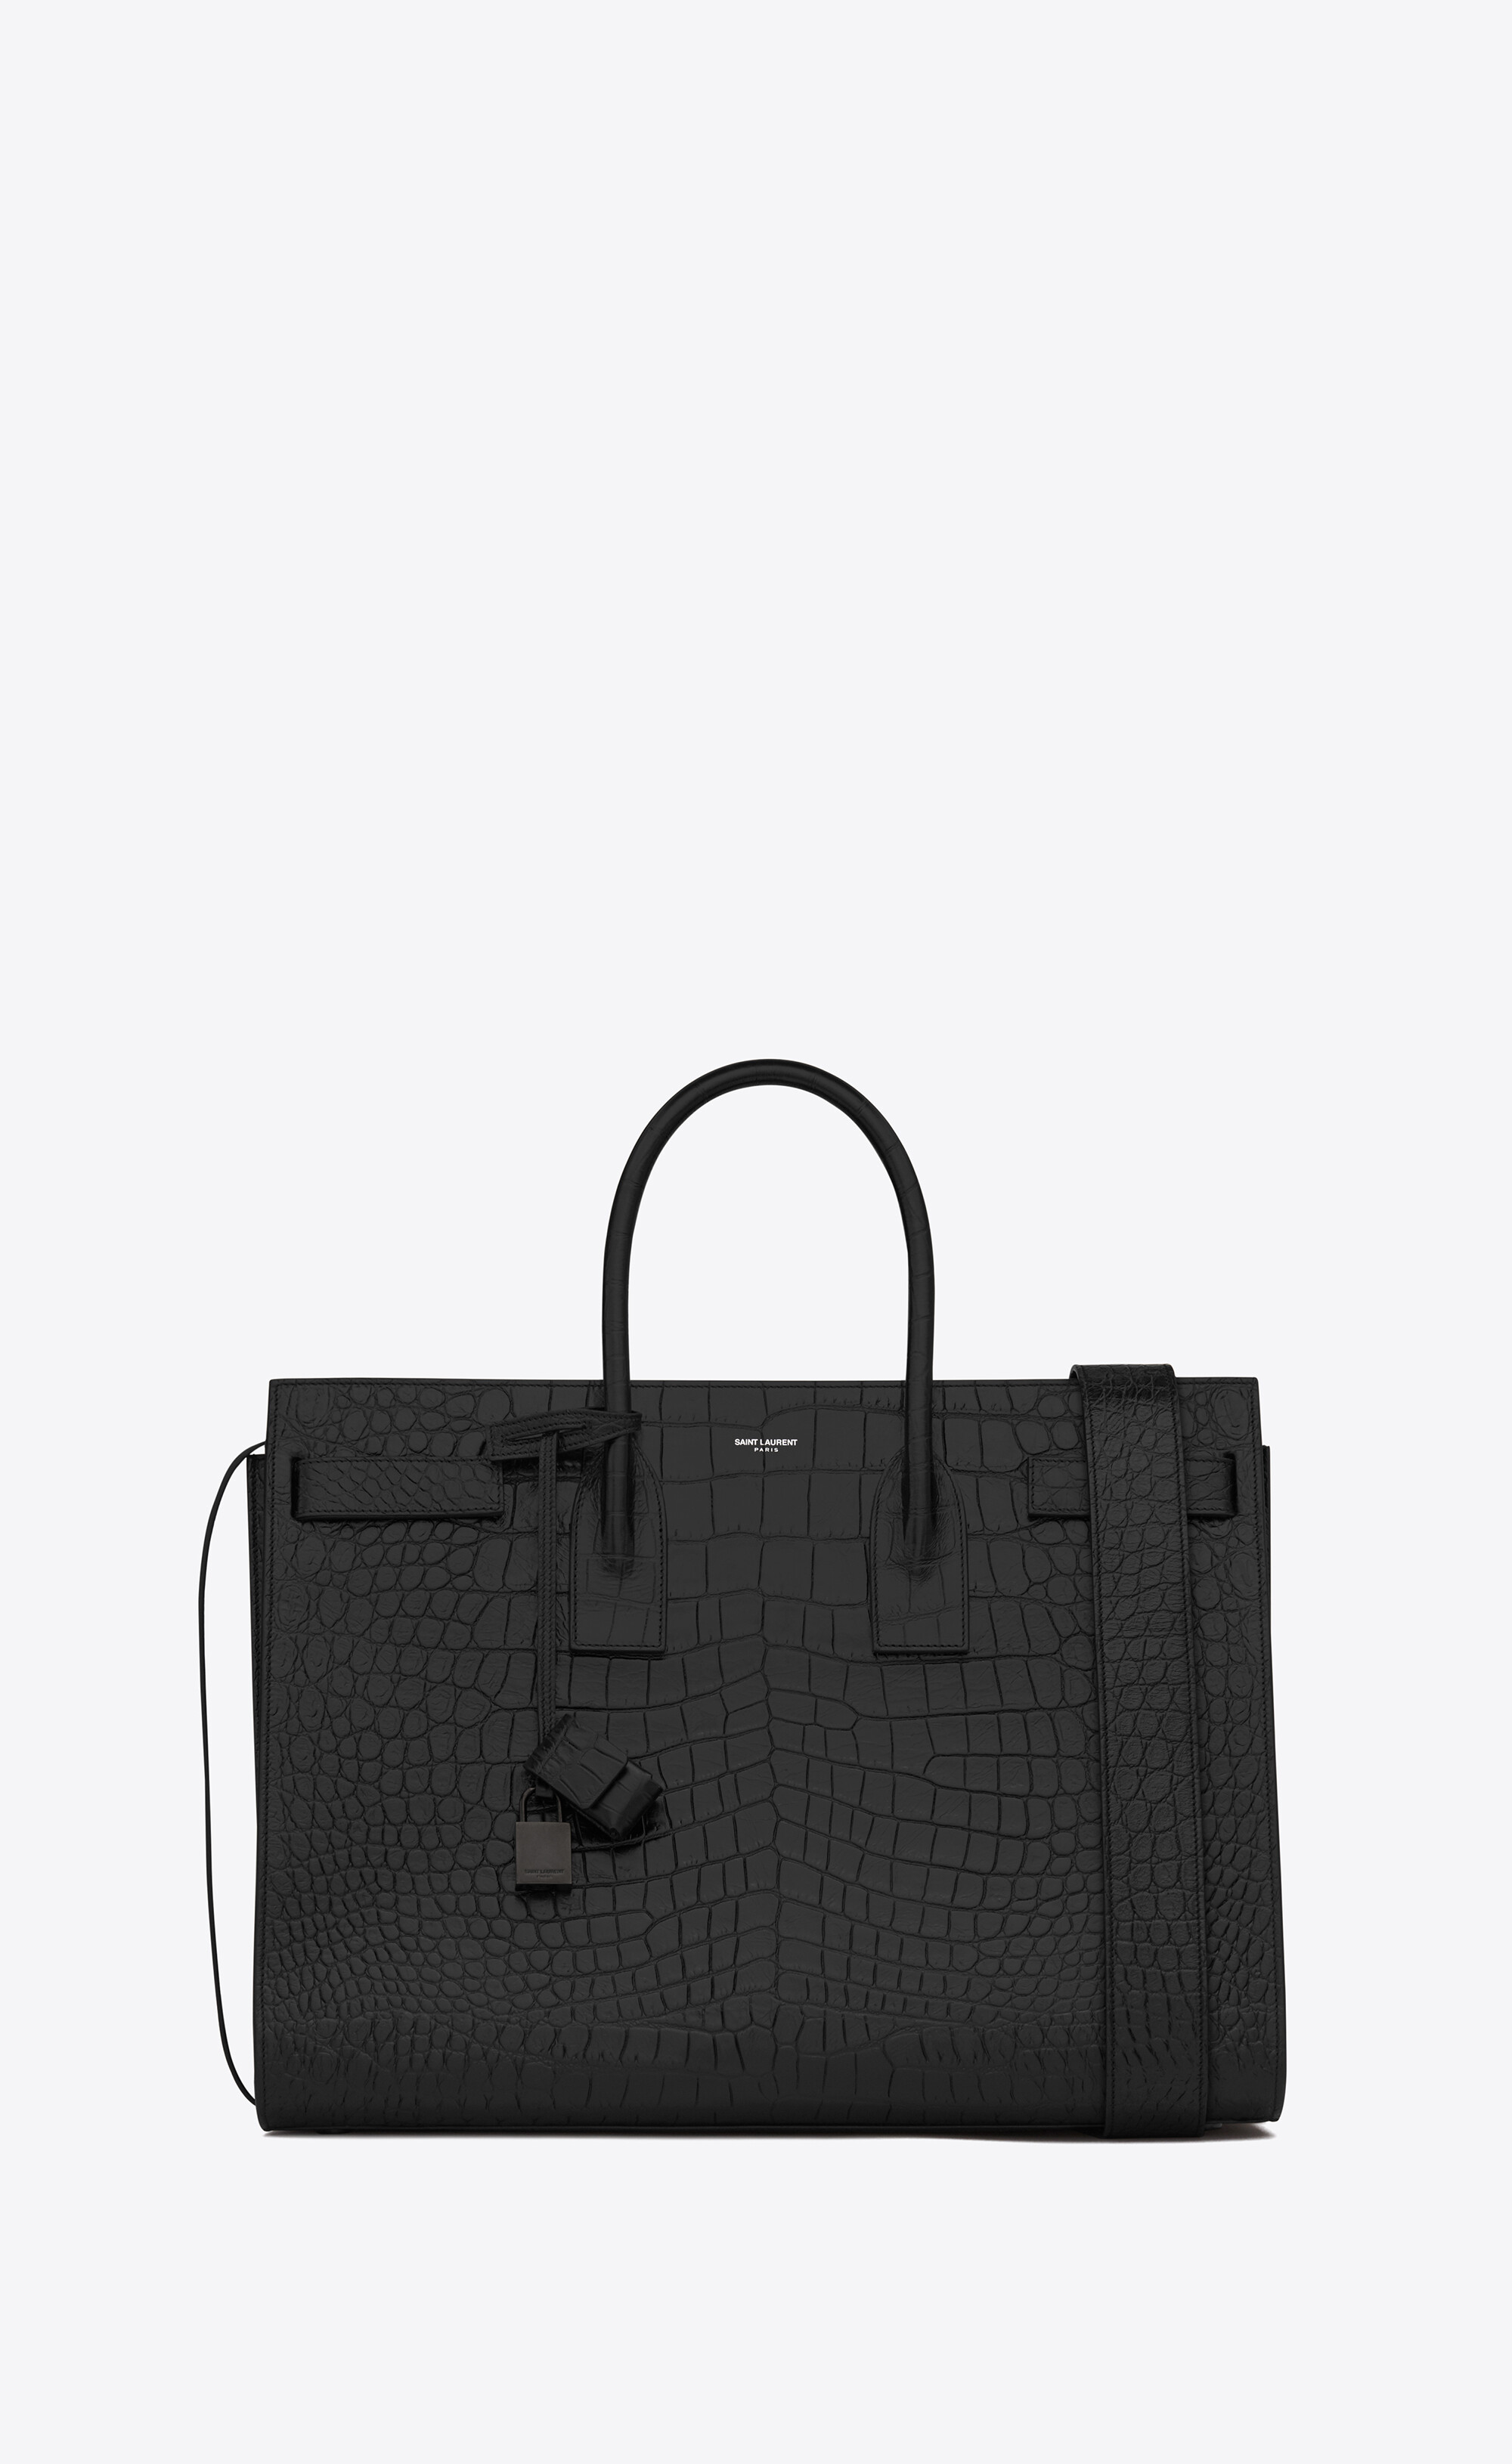 bag in black crocodile embossed leather ...